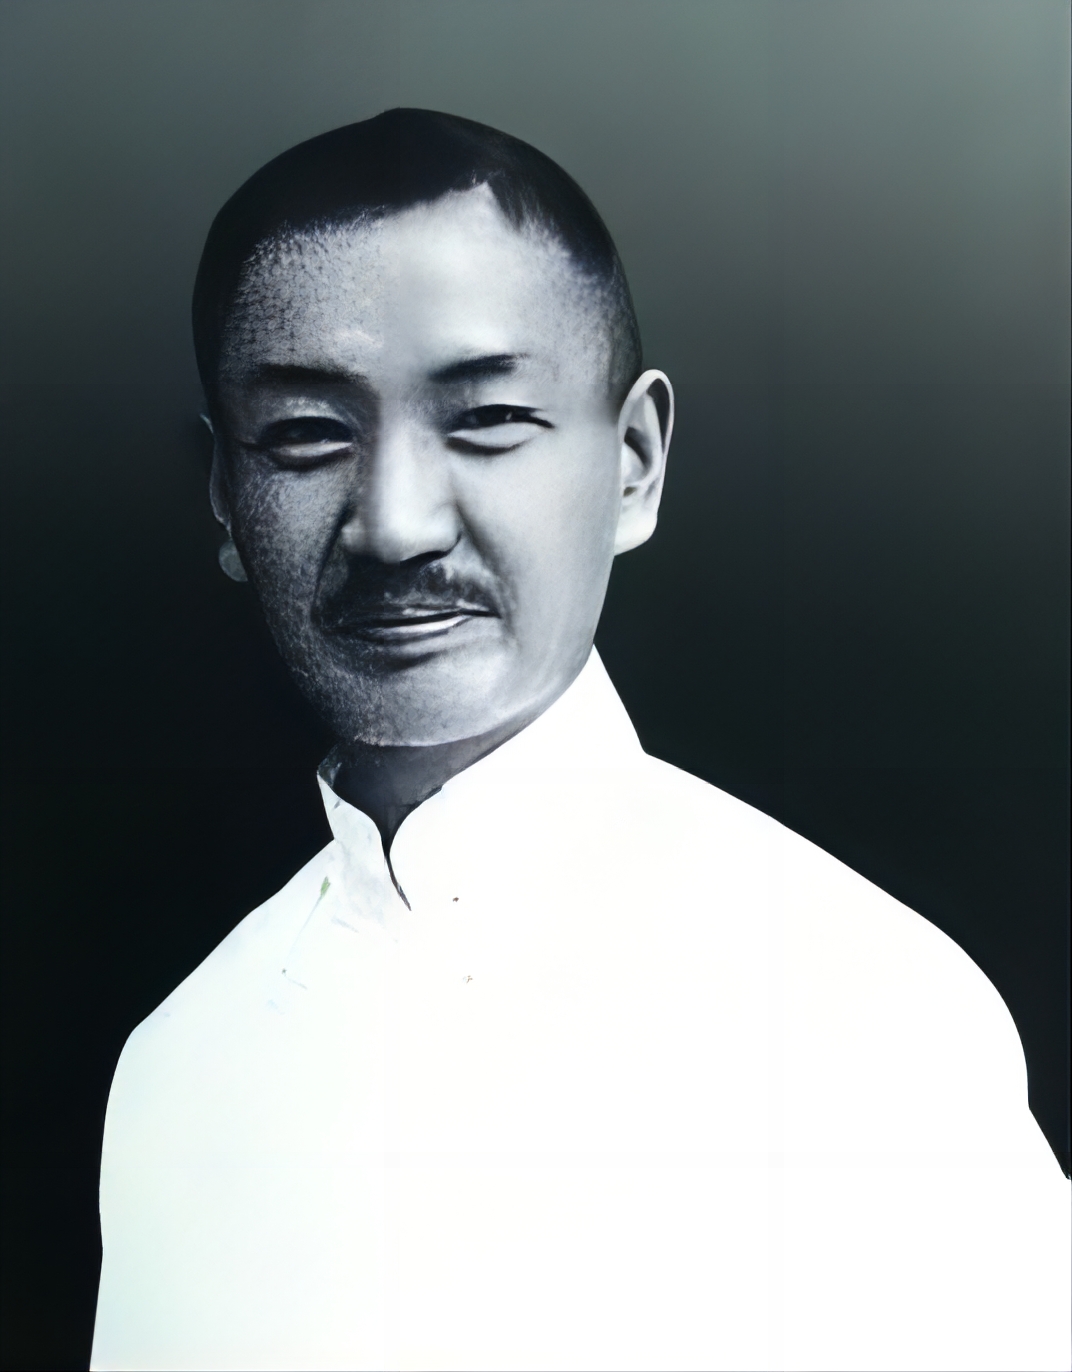 中华民国国旗歌作词者戴季陶于1949年2月11日逝世